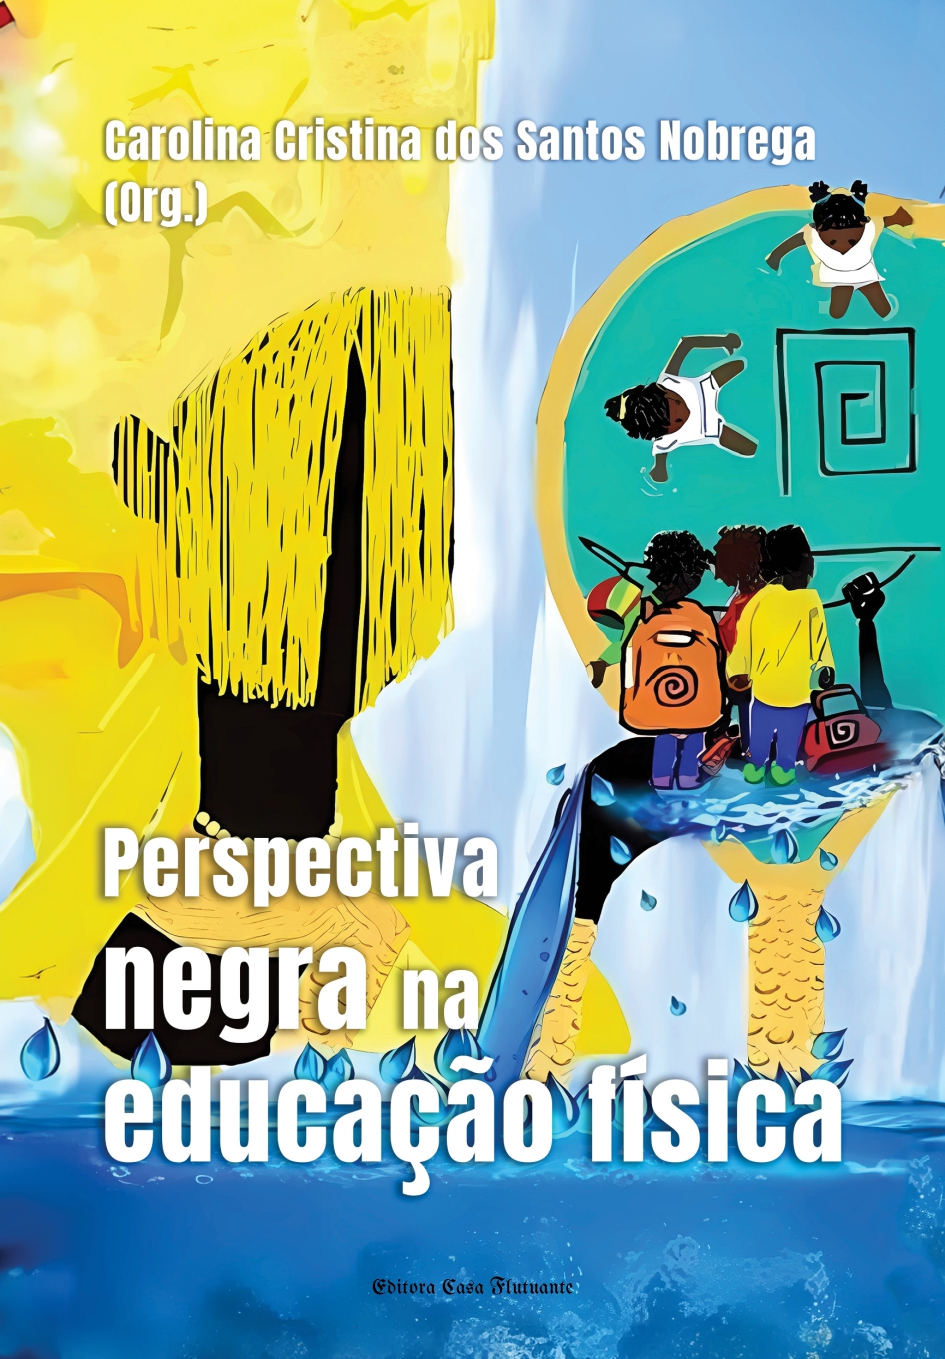 Professor da UFMA de Pinheiro contribui para a produção do livro “Perspectiva Negra na Educação Física”